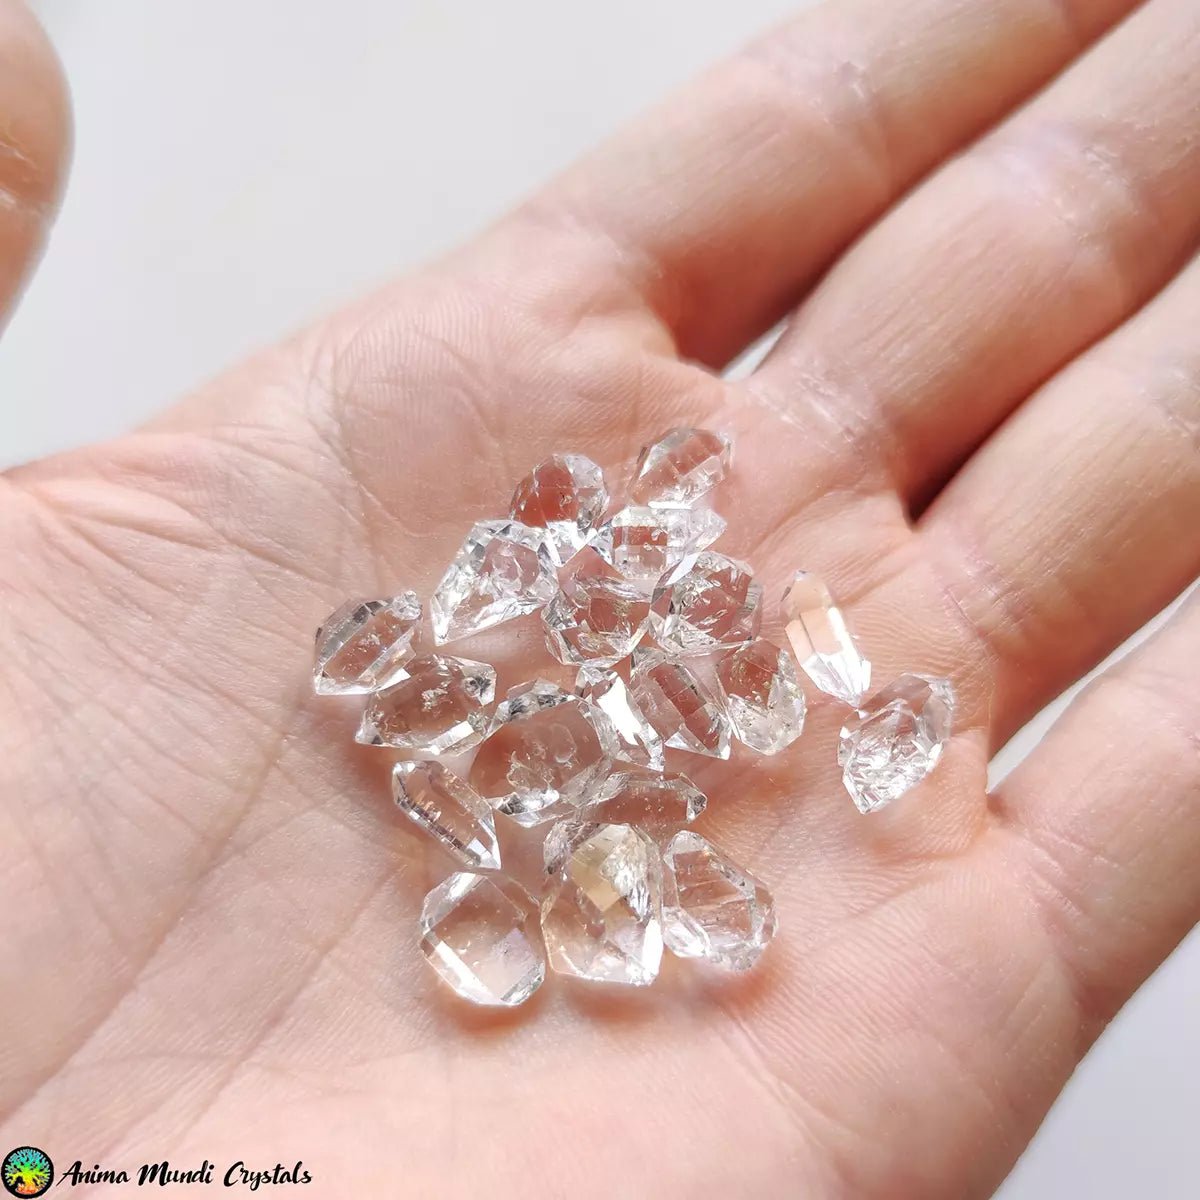 Cristales de cuarzo diamante de más de 10 mm - Cristales Anima Mundi